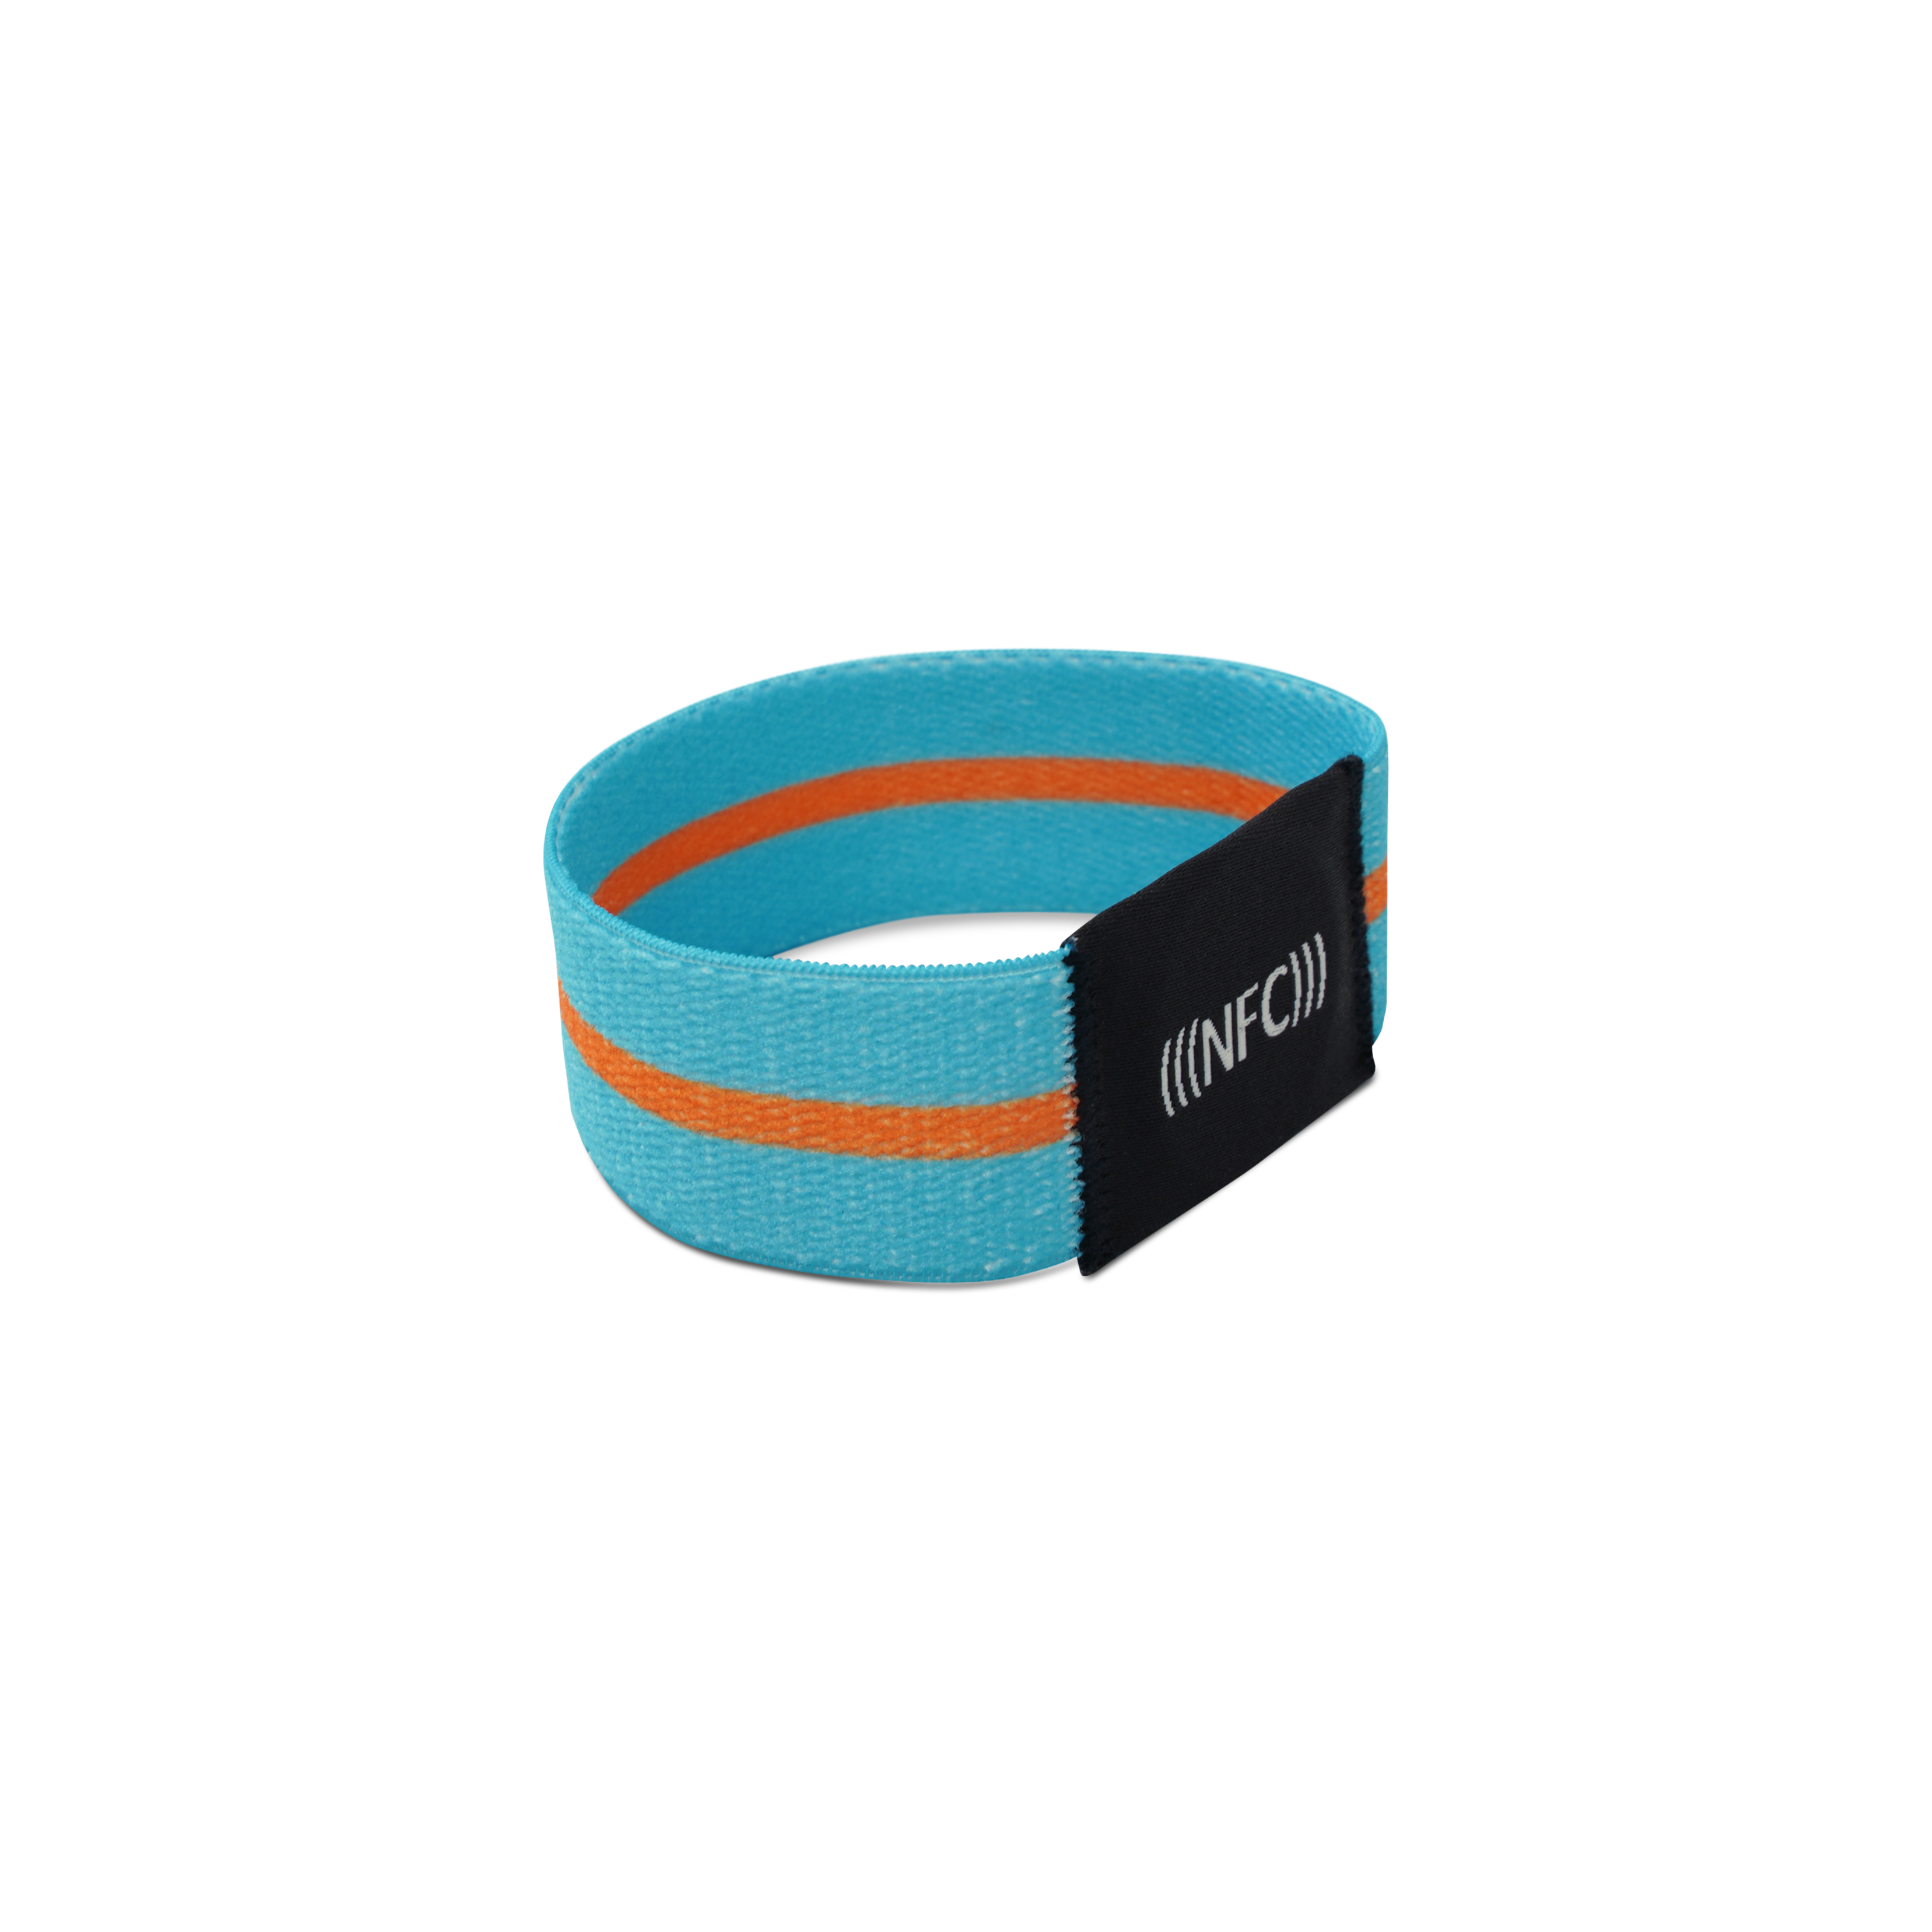 Seitenansicht NFC Armband aus hellblauem Stoff mit orangenem Streifen und "NFC" Aufstickung